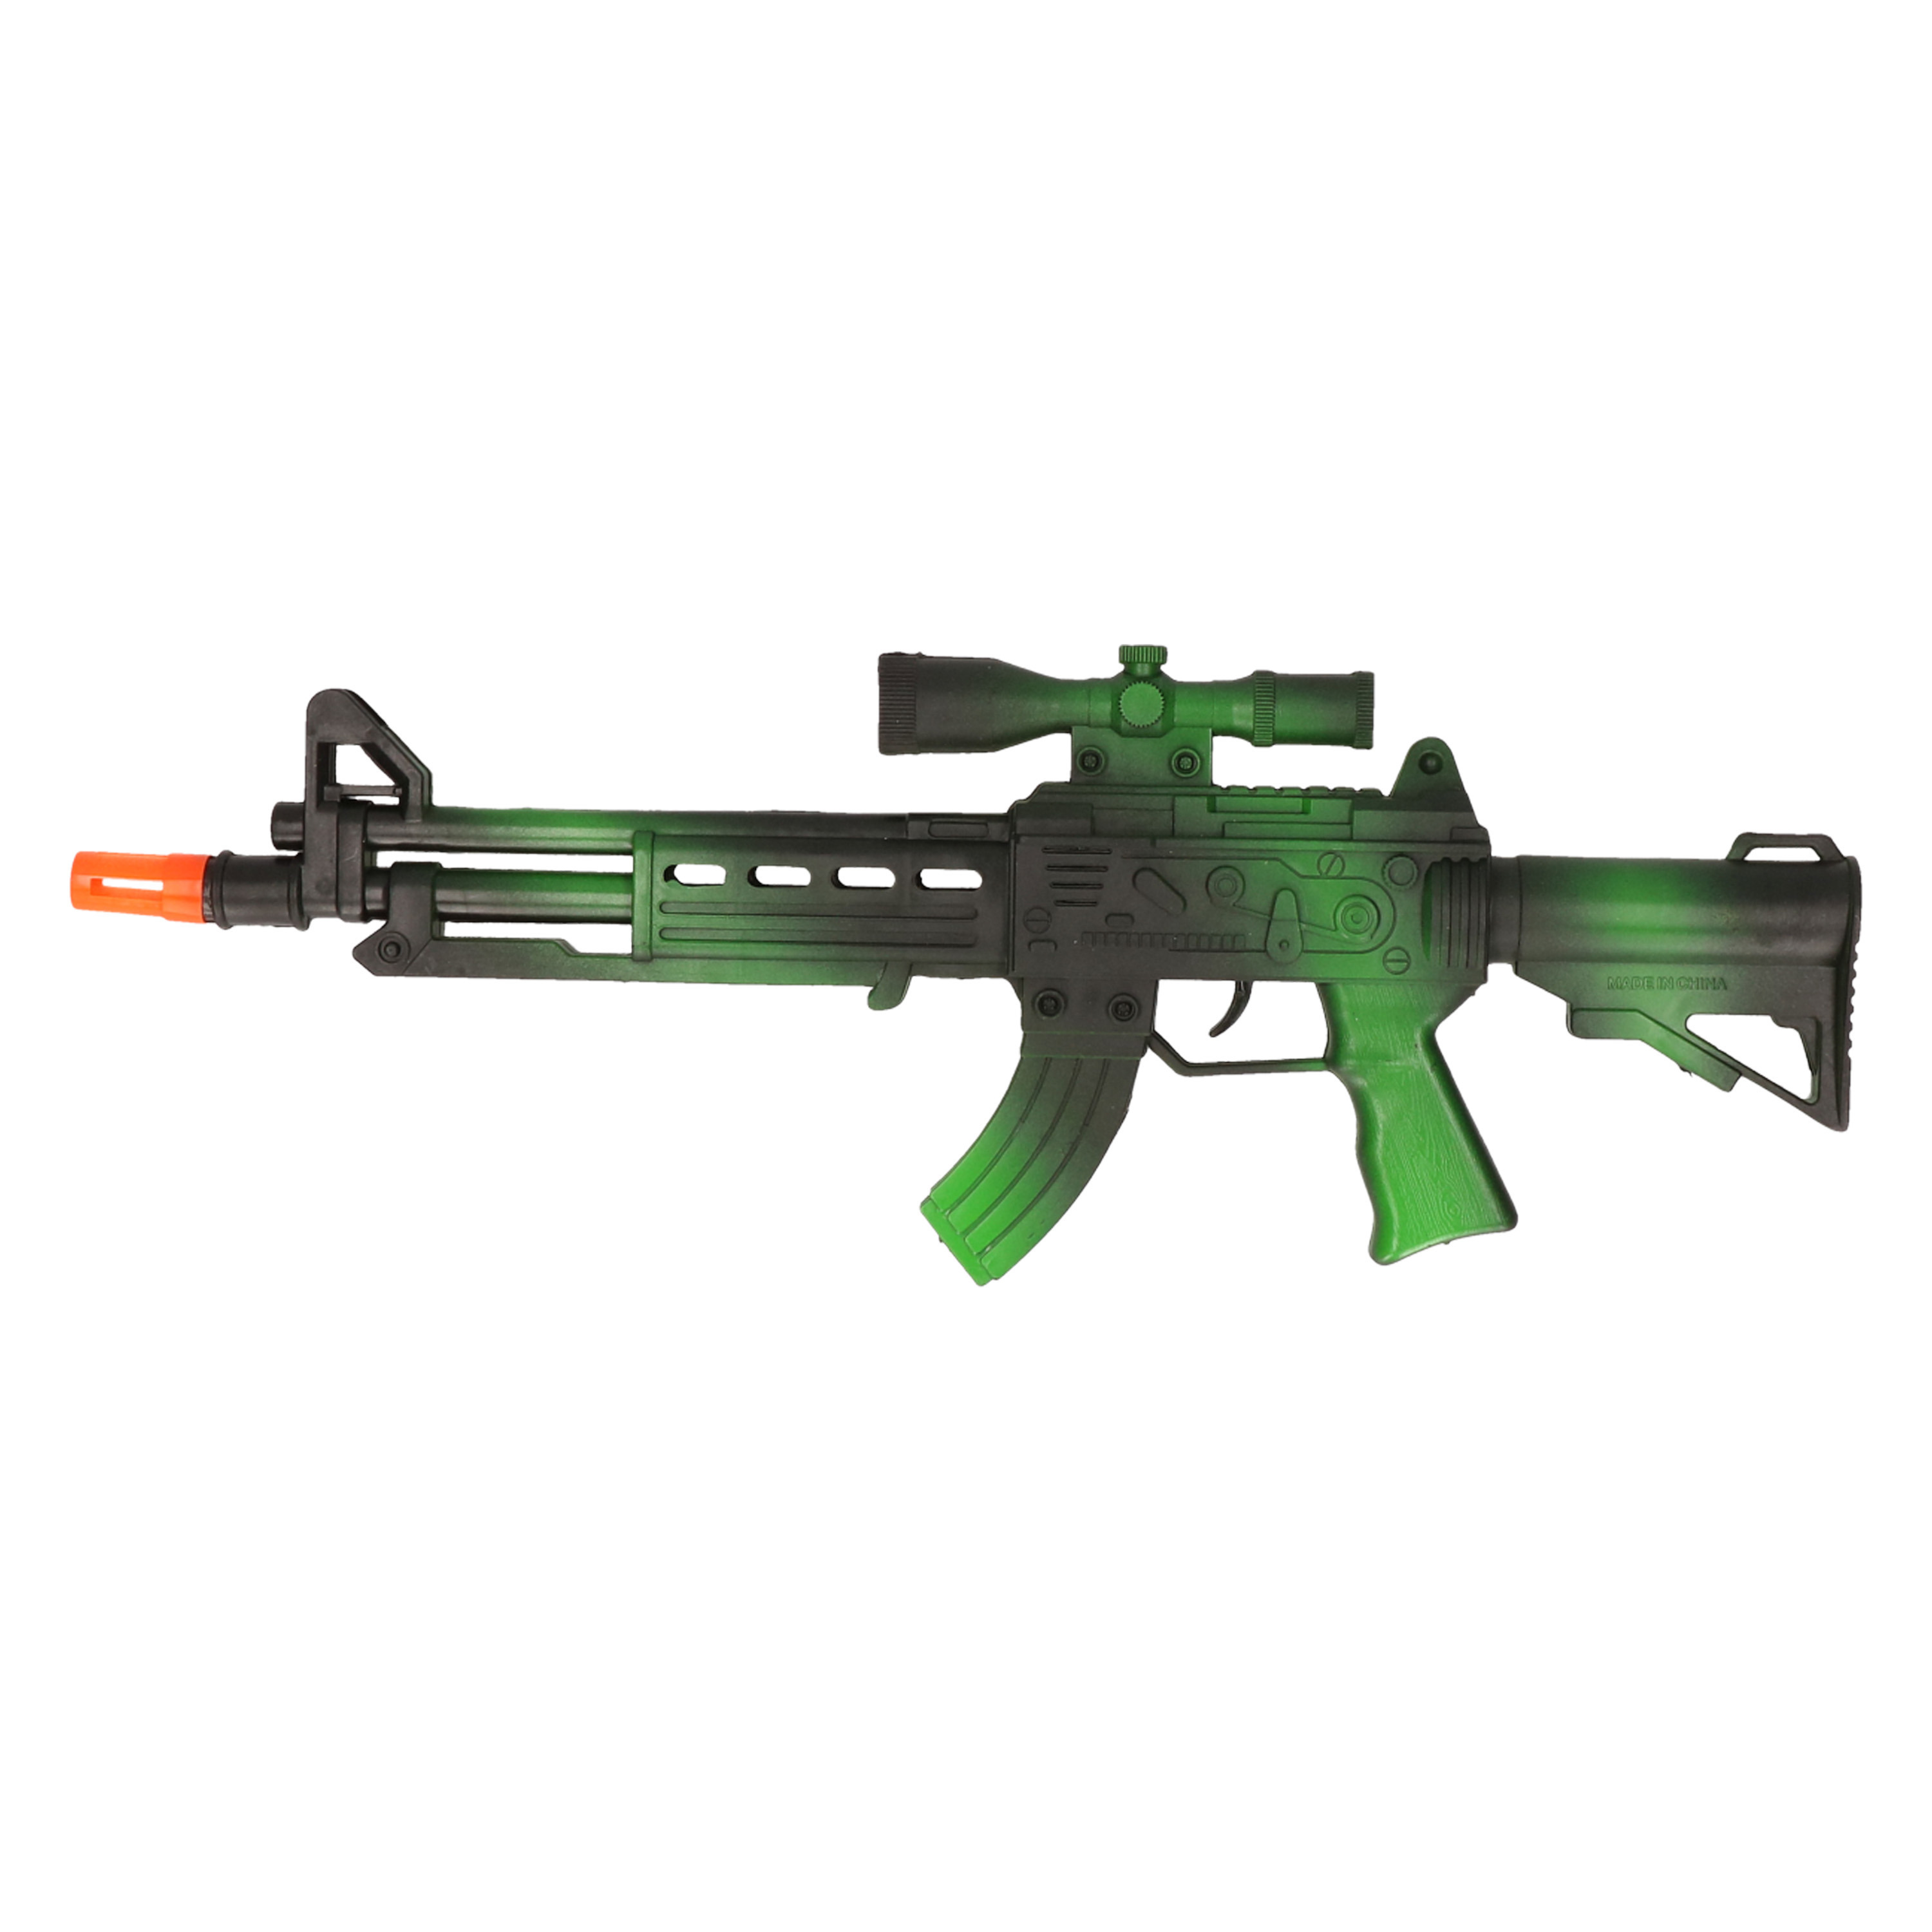 Verkleed speelgoed Politie-soldaten geweer machinegeweer zwart-groen plastic 38 cm